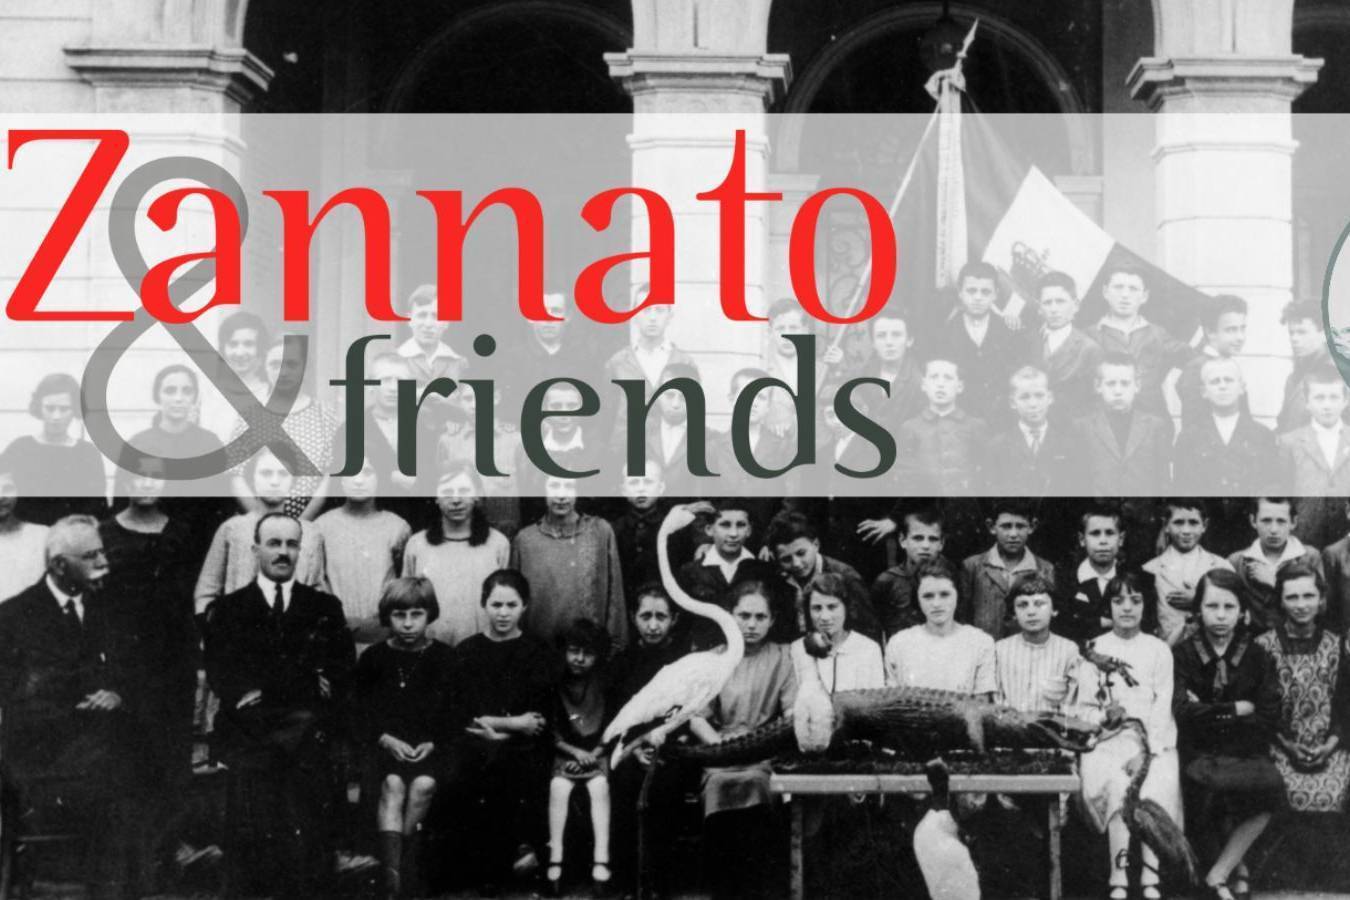 ZANNATO & FRIENDS